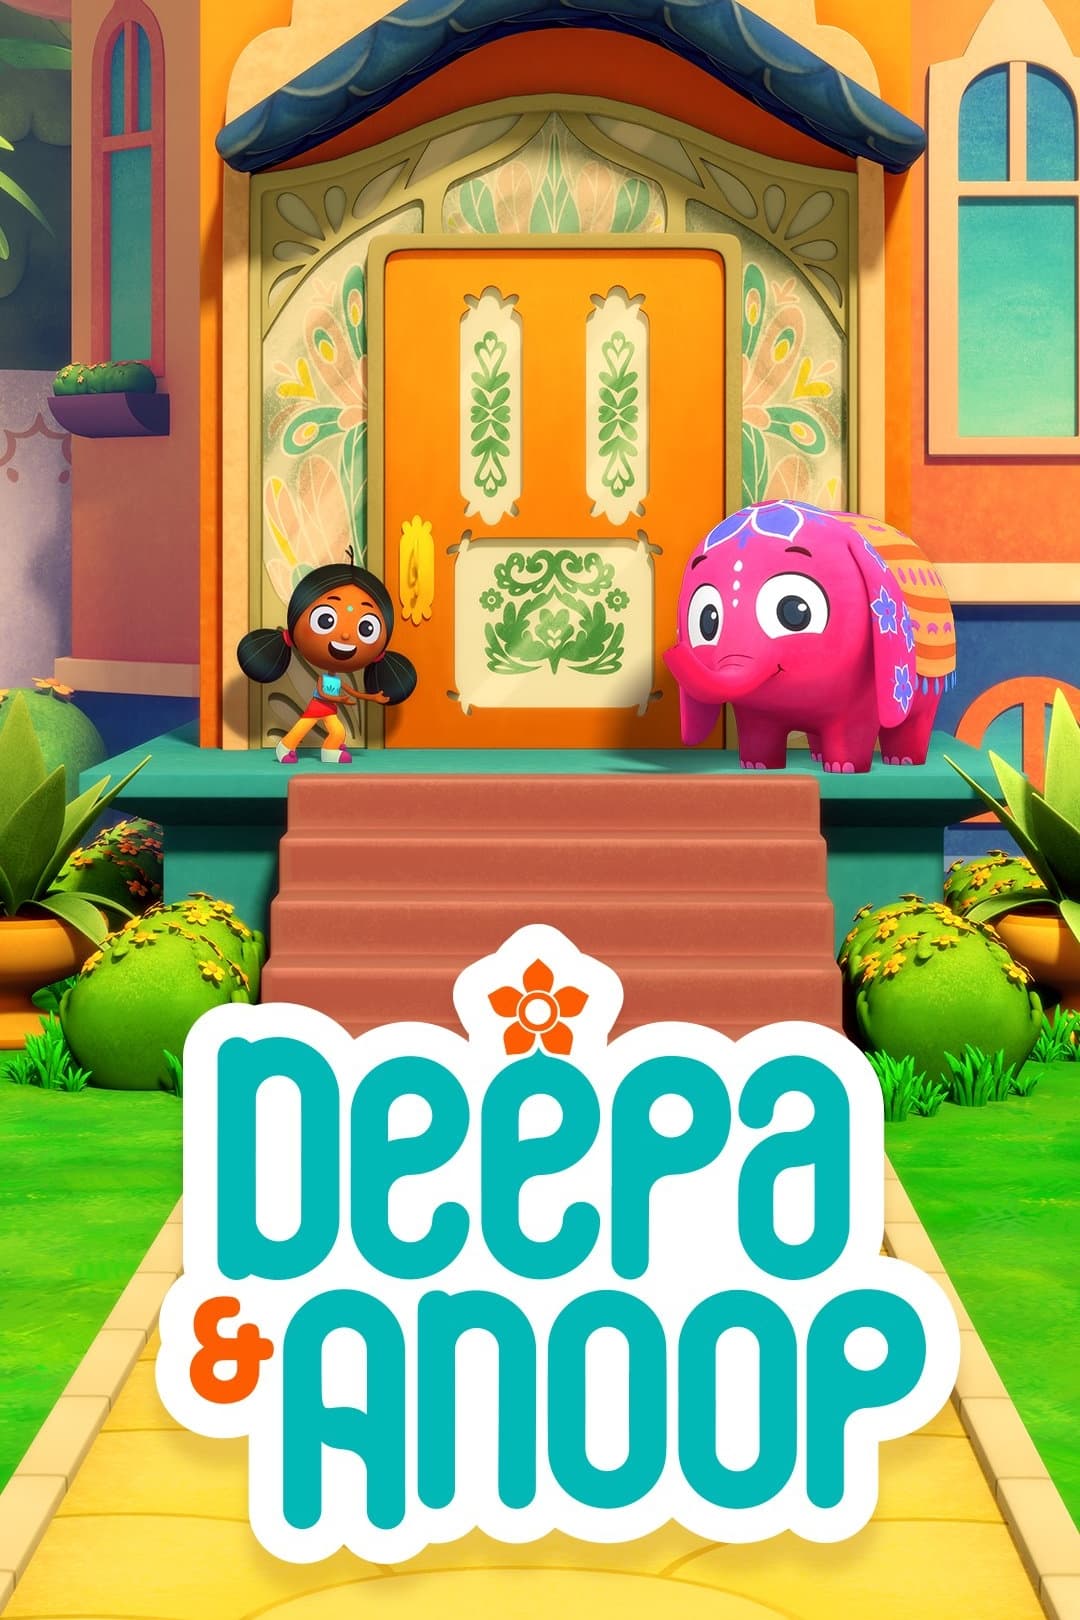 Deepa & Anoop TV Shows About Friends